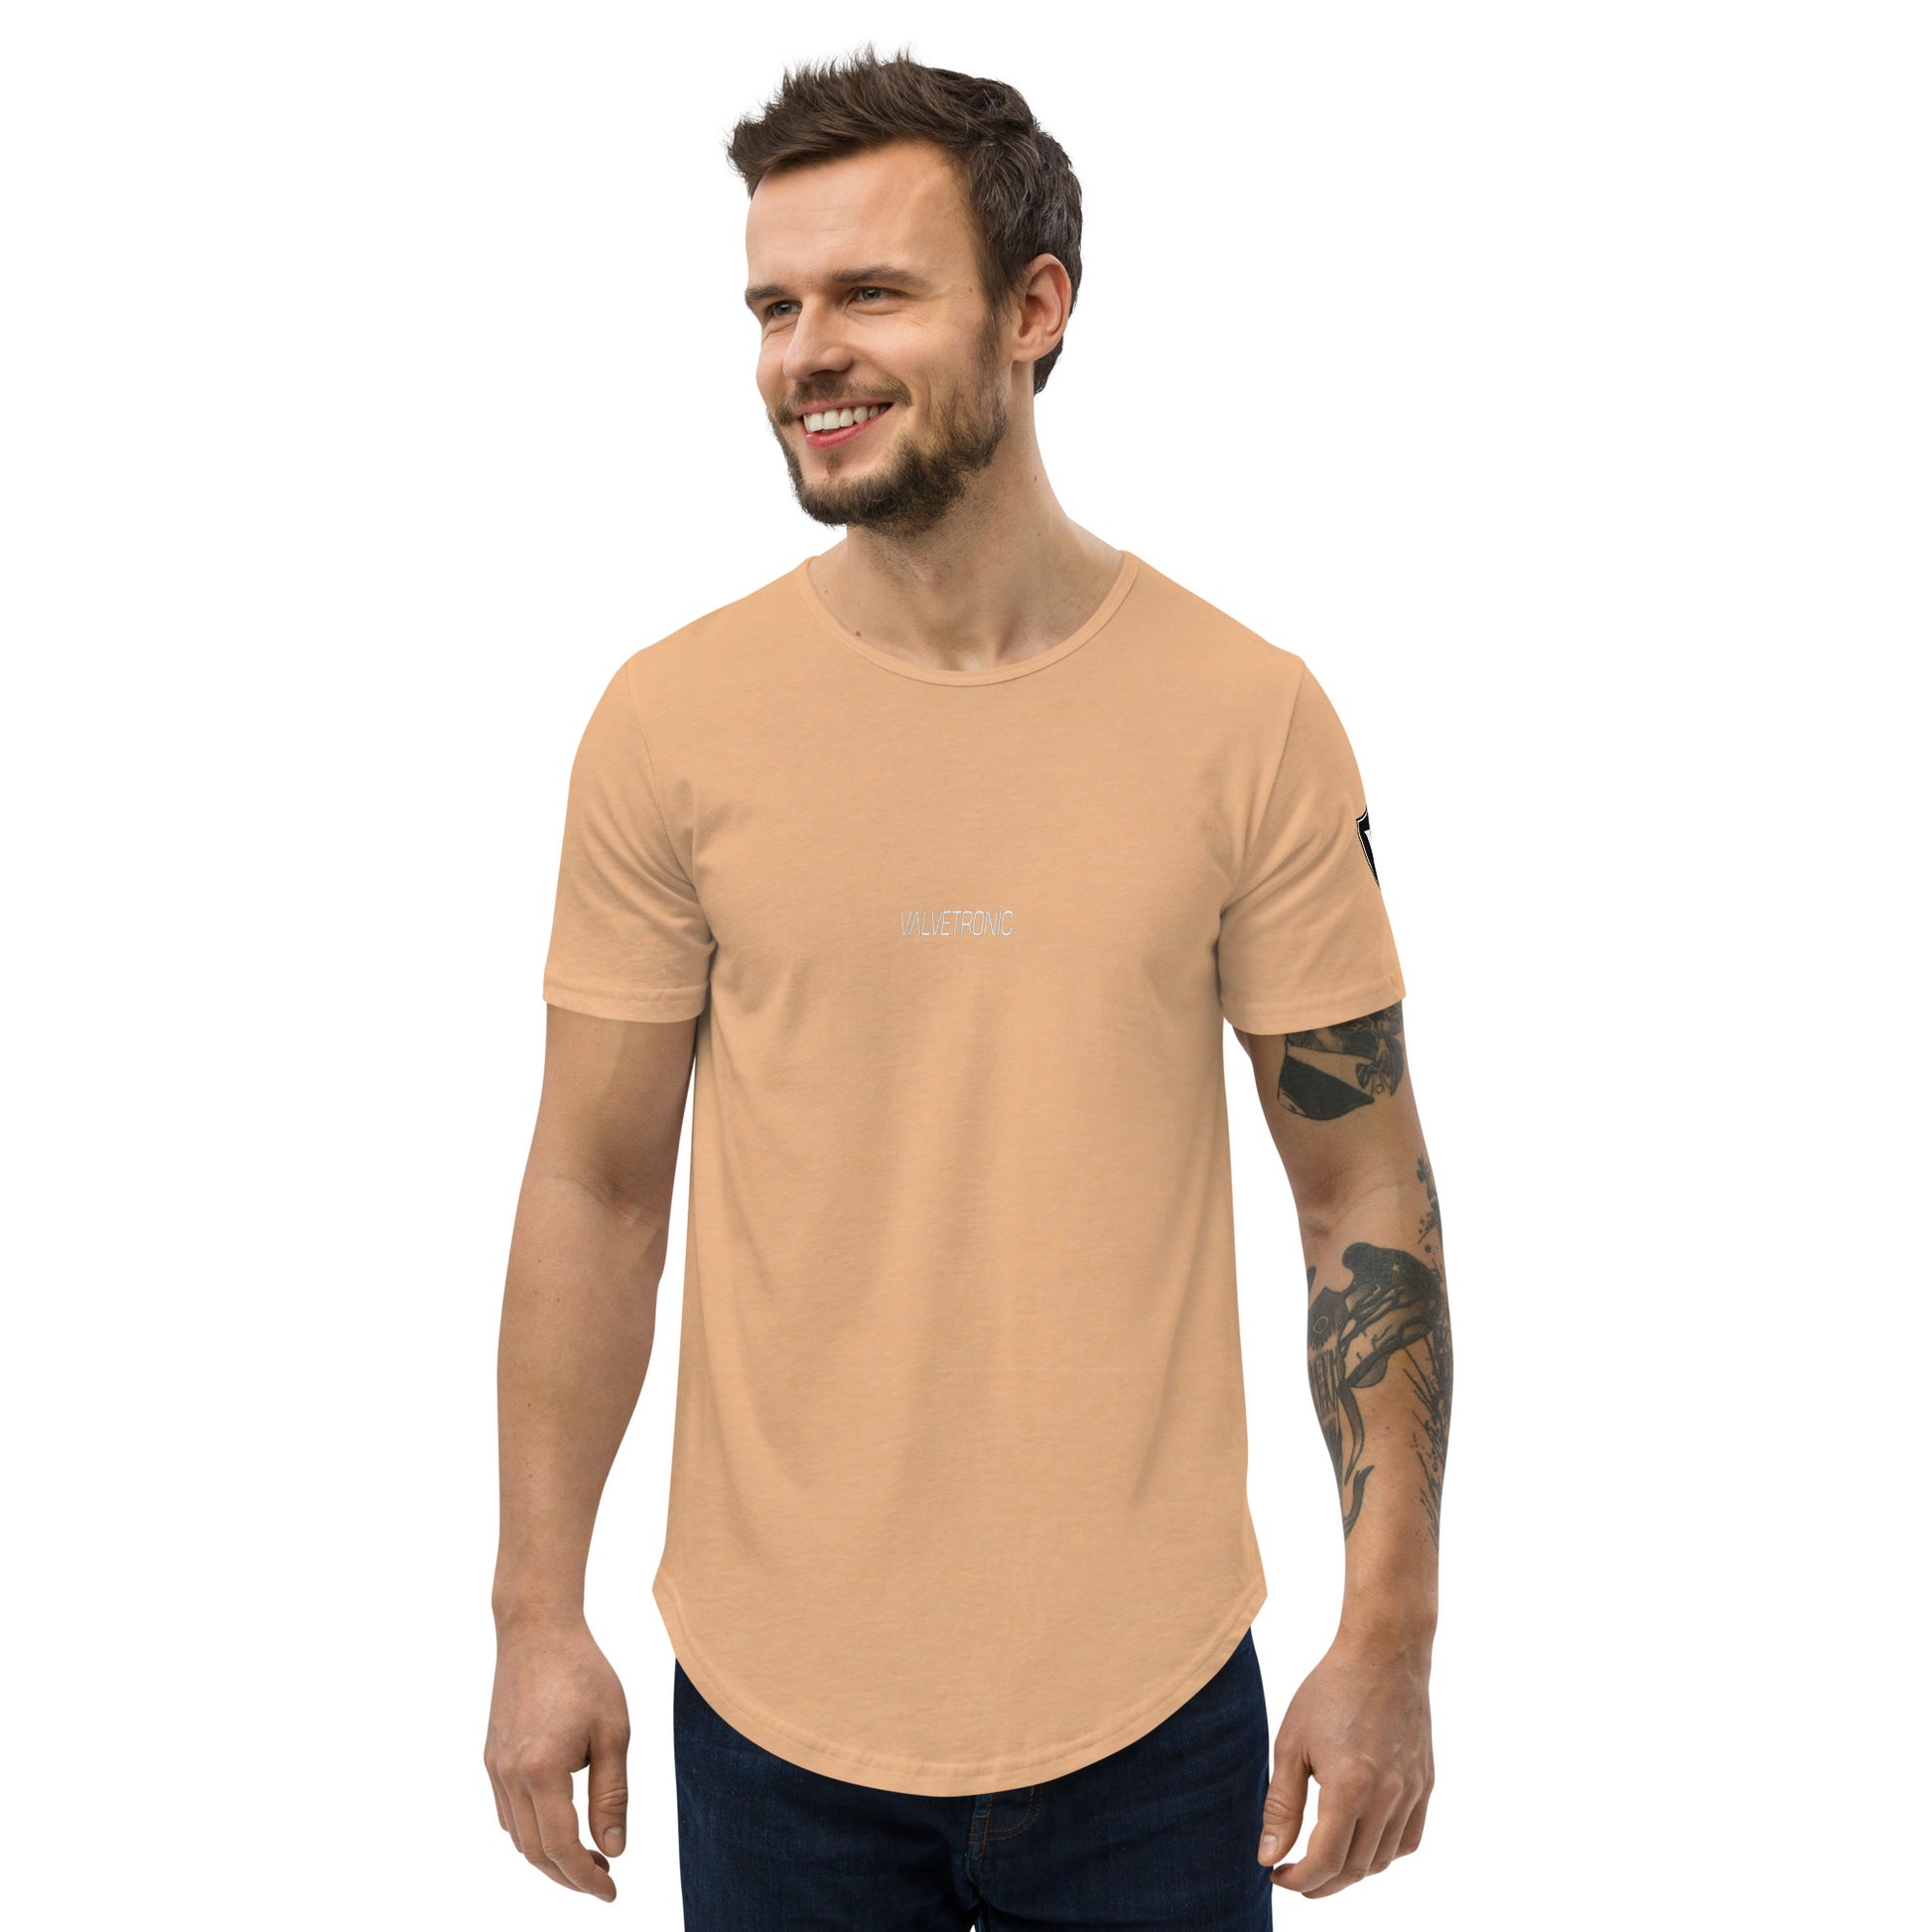 Valvetronic Men's Curved Hem T-Shirt white text – Valvetronic Designs